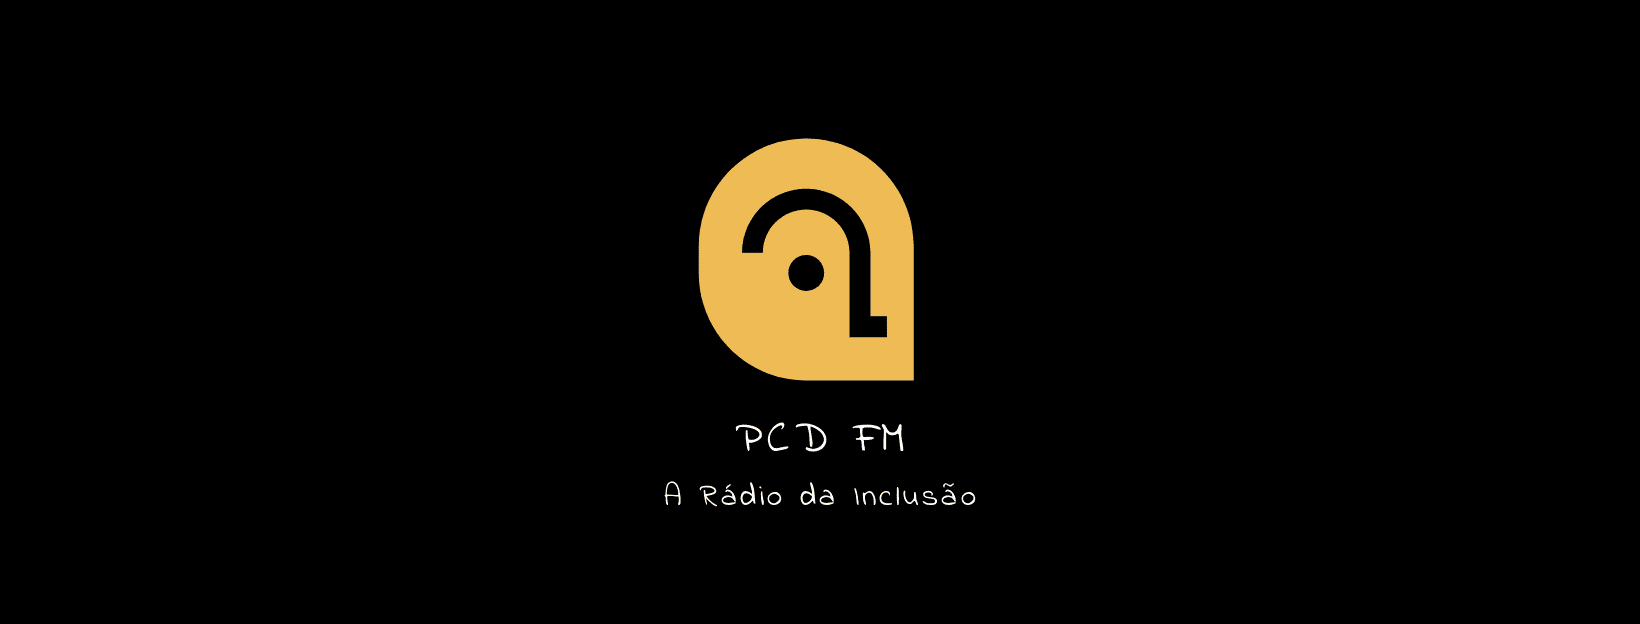 Rádio PCD FM - A Rádio da Inclusão 